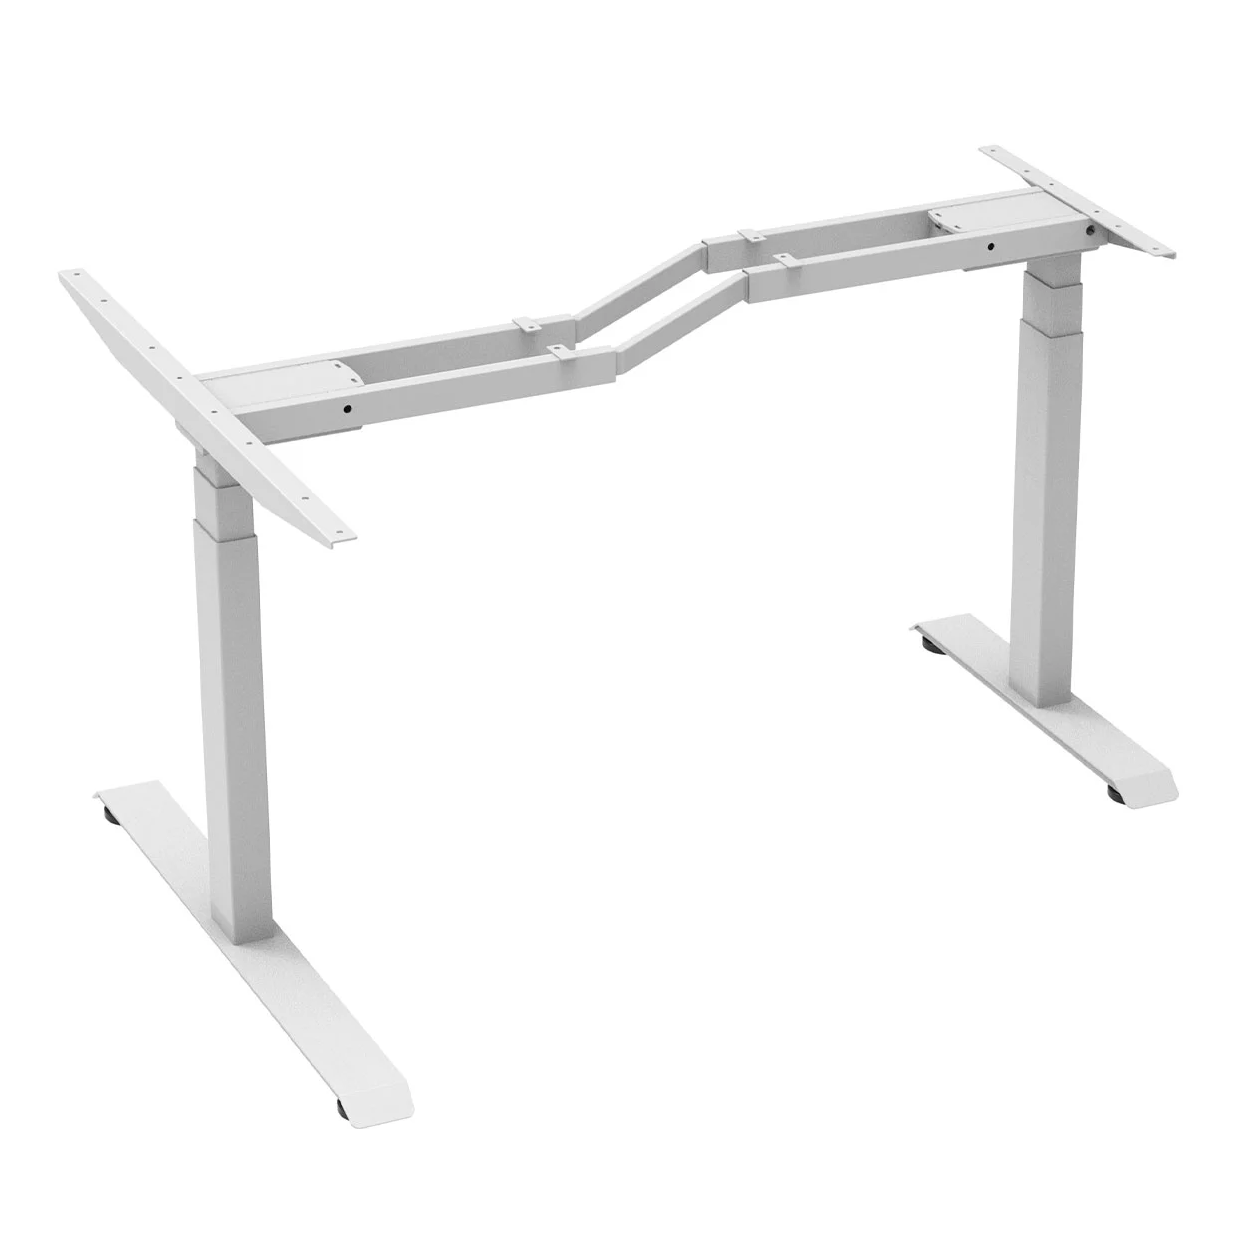 L-shaped Wooden Desk Tops Height Adjustable Standing Desk for Sit-Stand Workstation